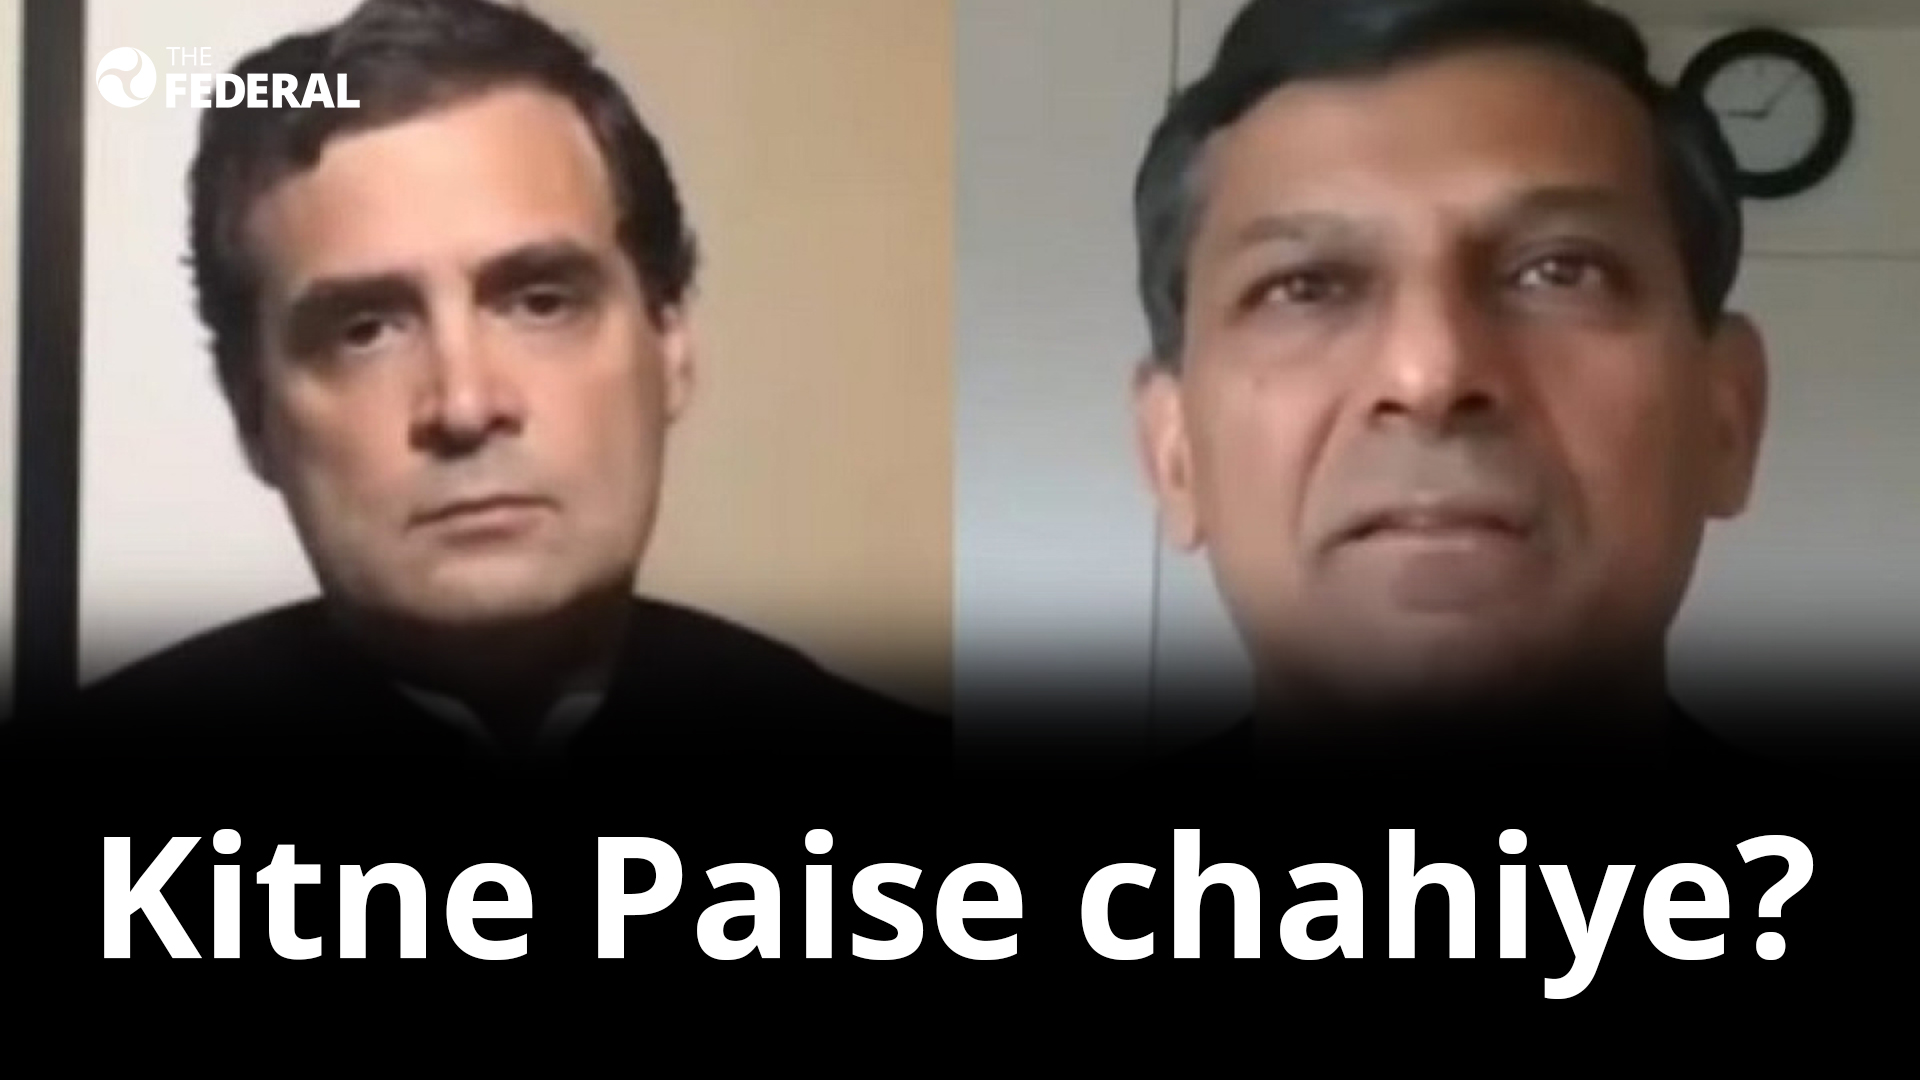 Kitne Paise chahiye? asks Rahul; Rajan says Rs.65k crore